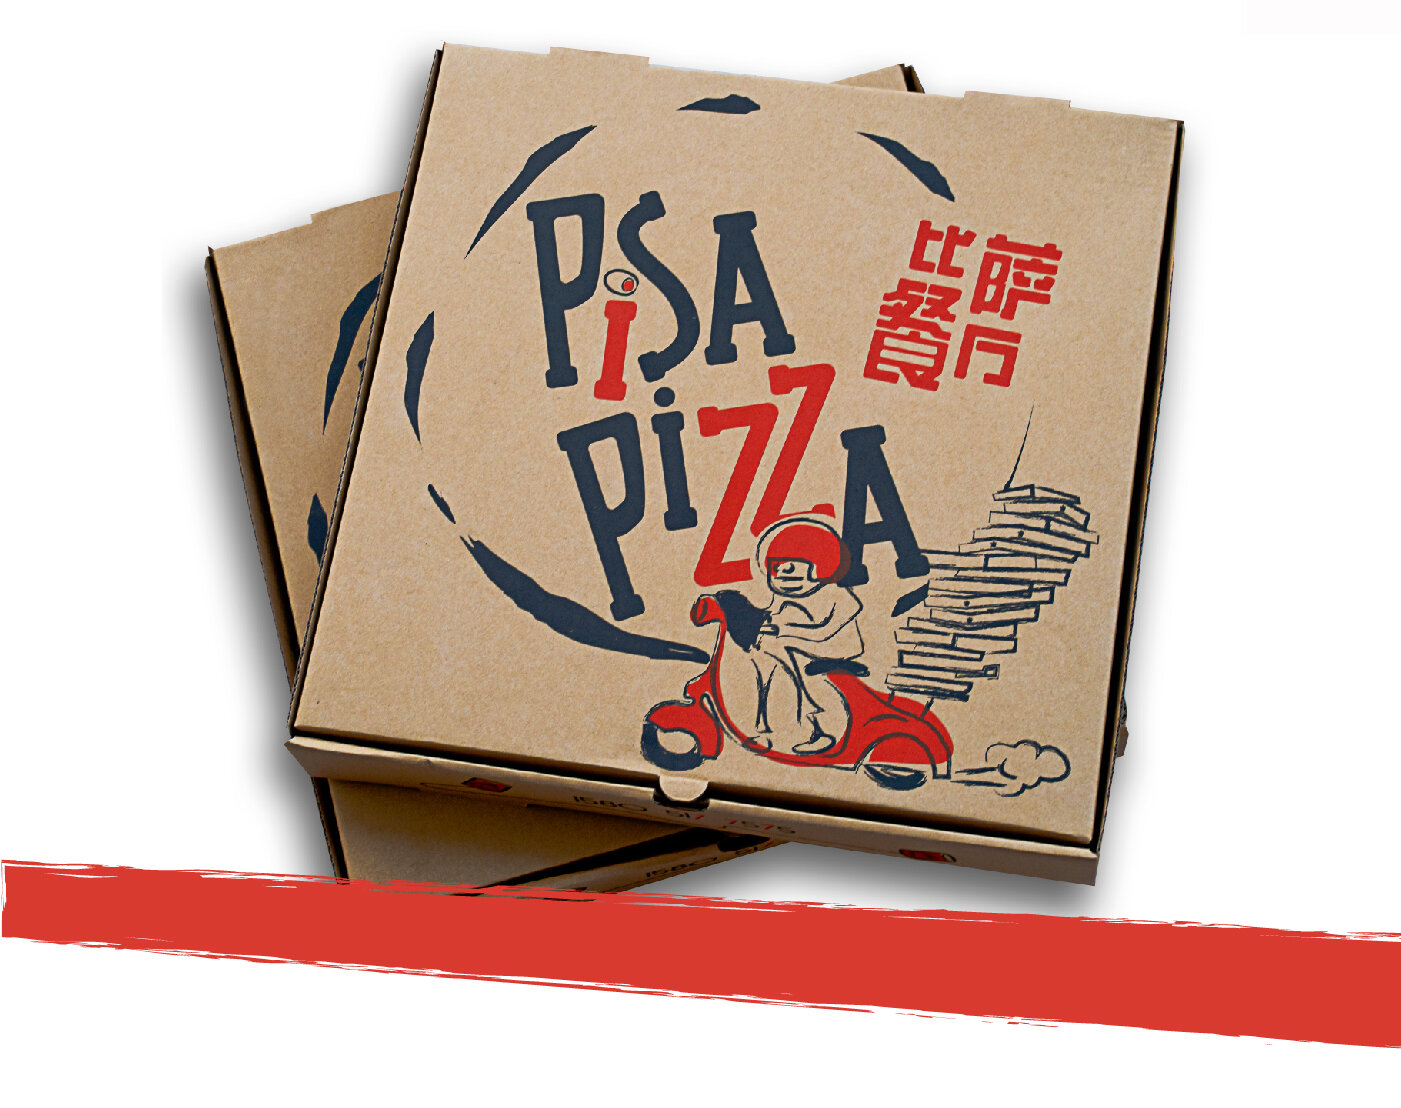 Création de visuels pour boîte de pizza